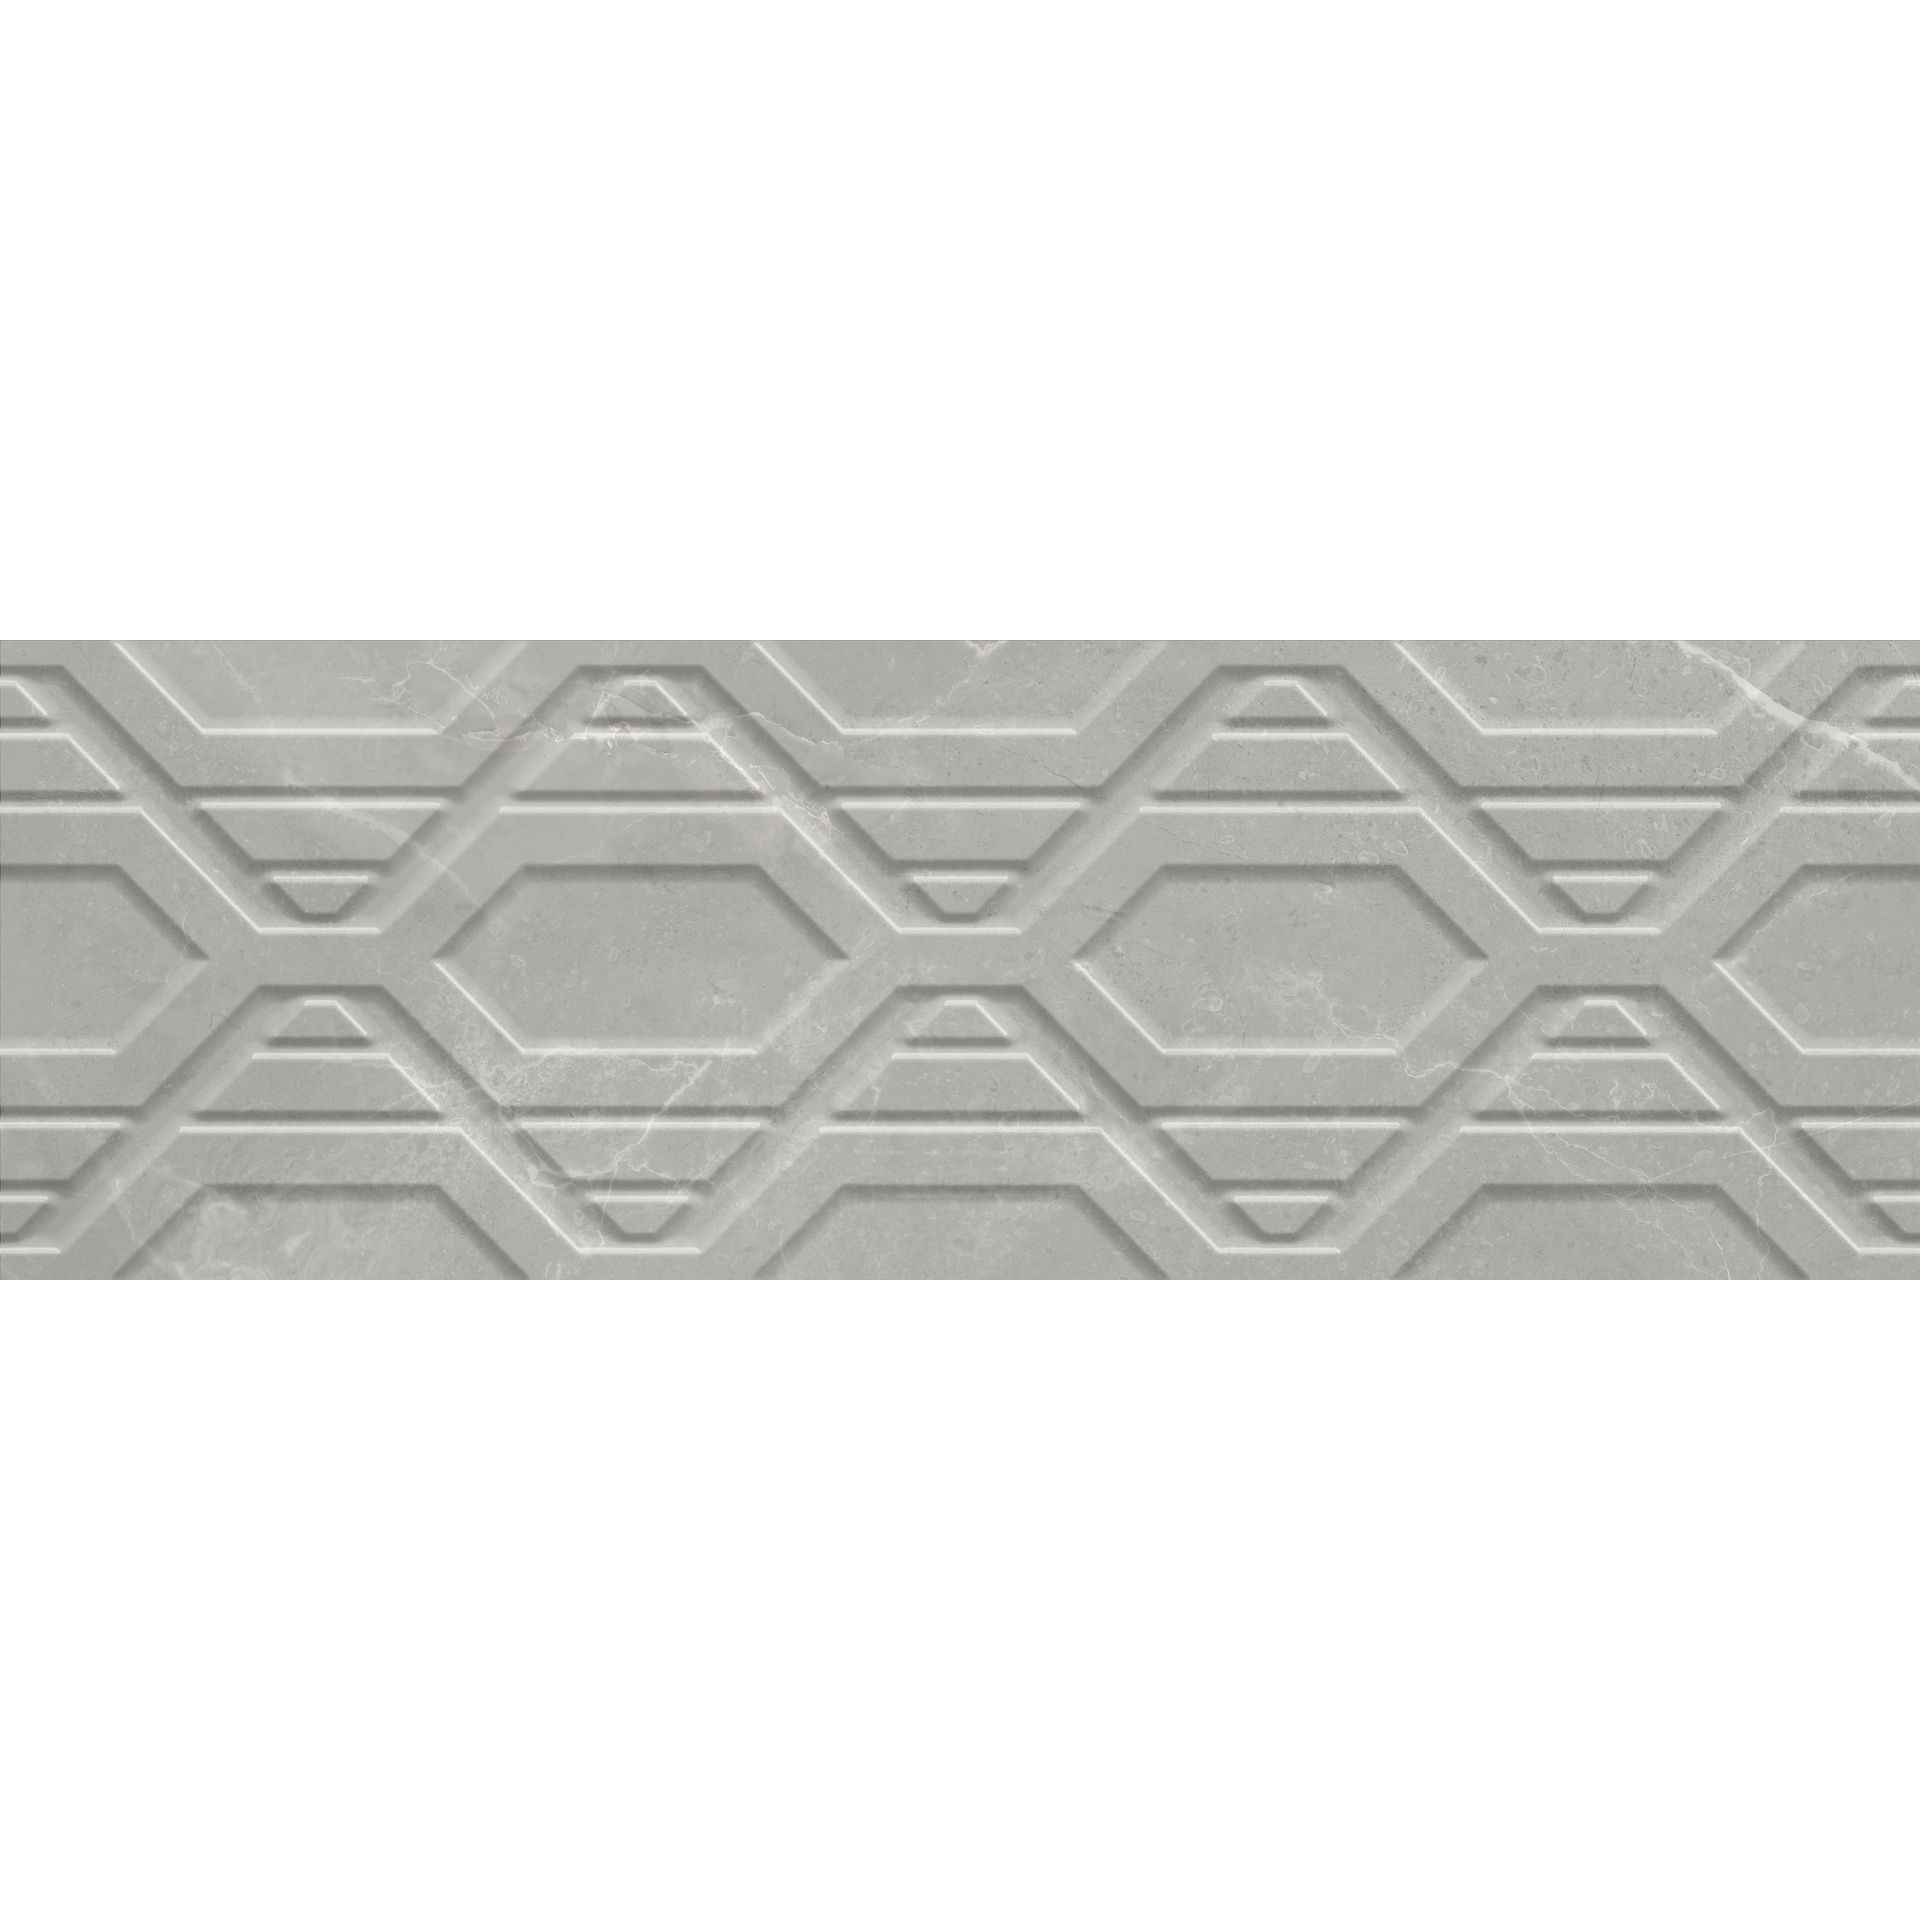 Плитка Azteca Dubai R90 Oxo Grey 30x90 см